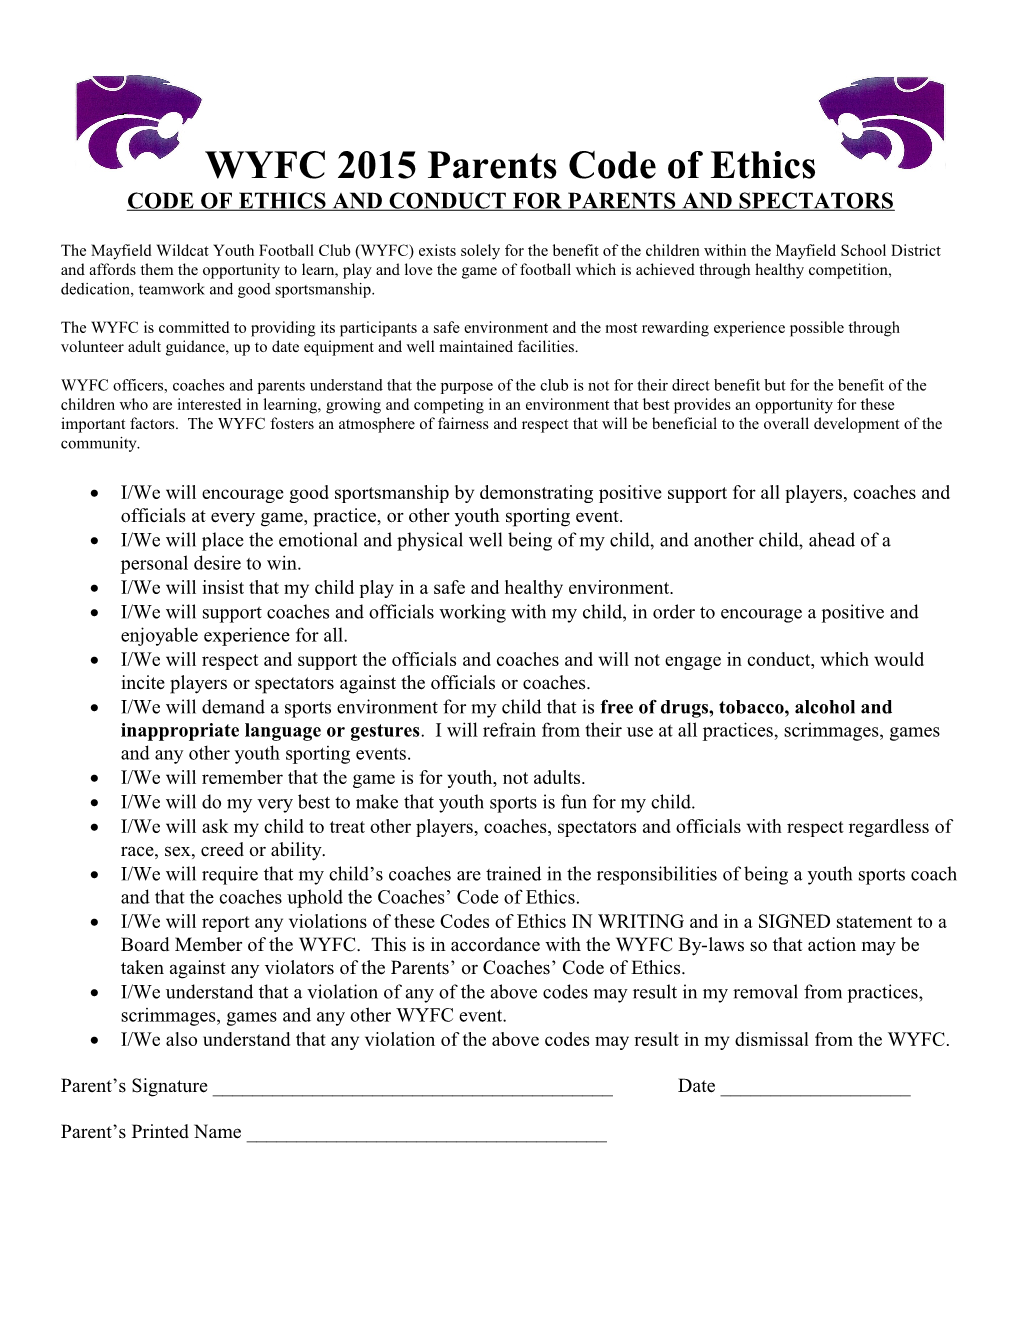 WYFC Code of Ethics